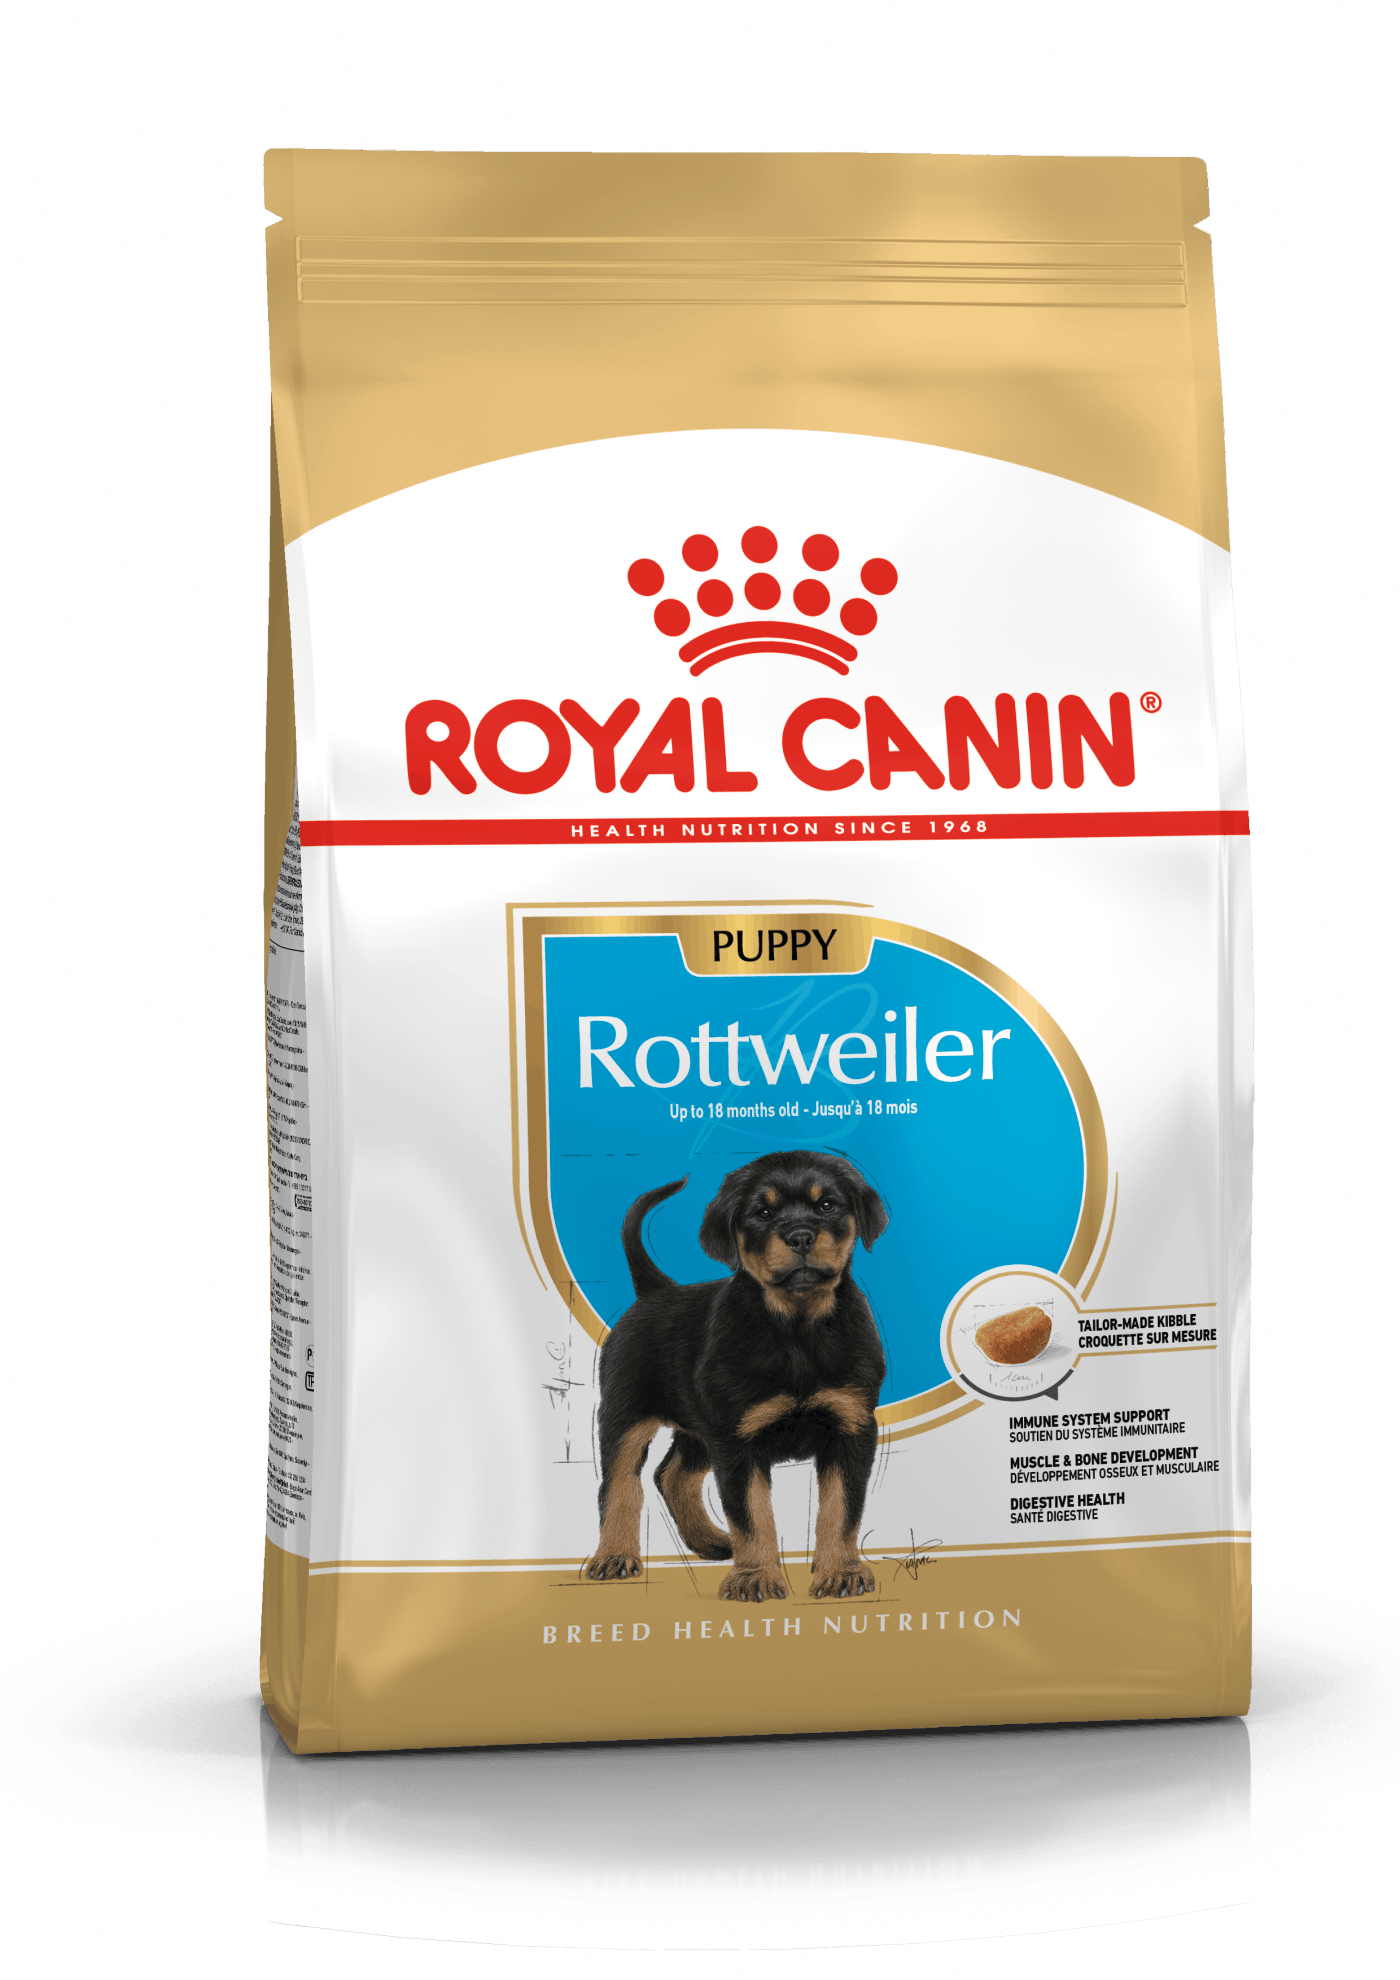 Royal Canin Rottweiler Puppy - op til 18 måneder (12kg)